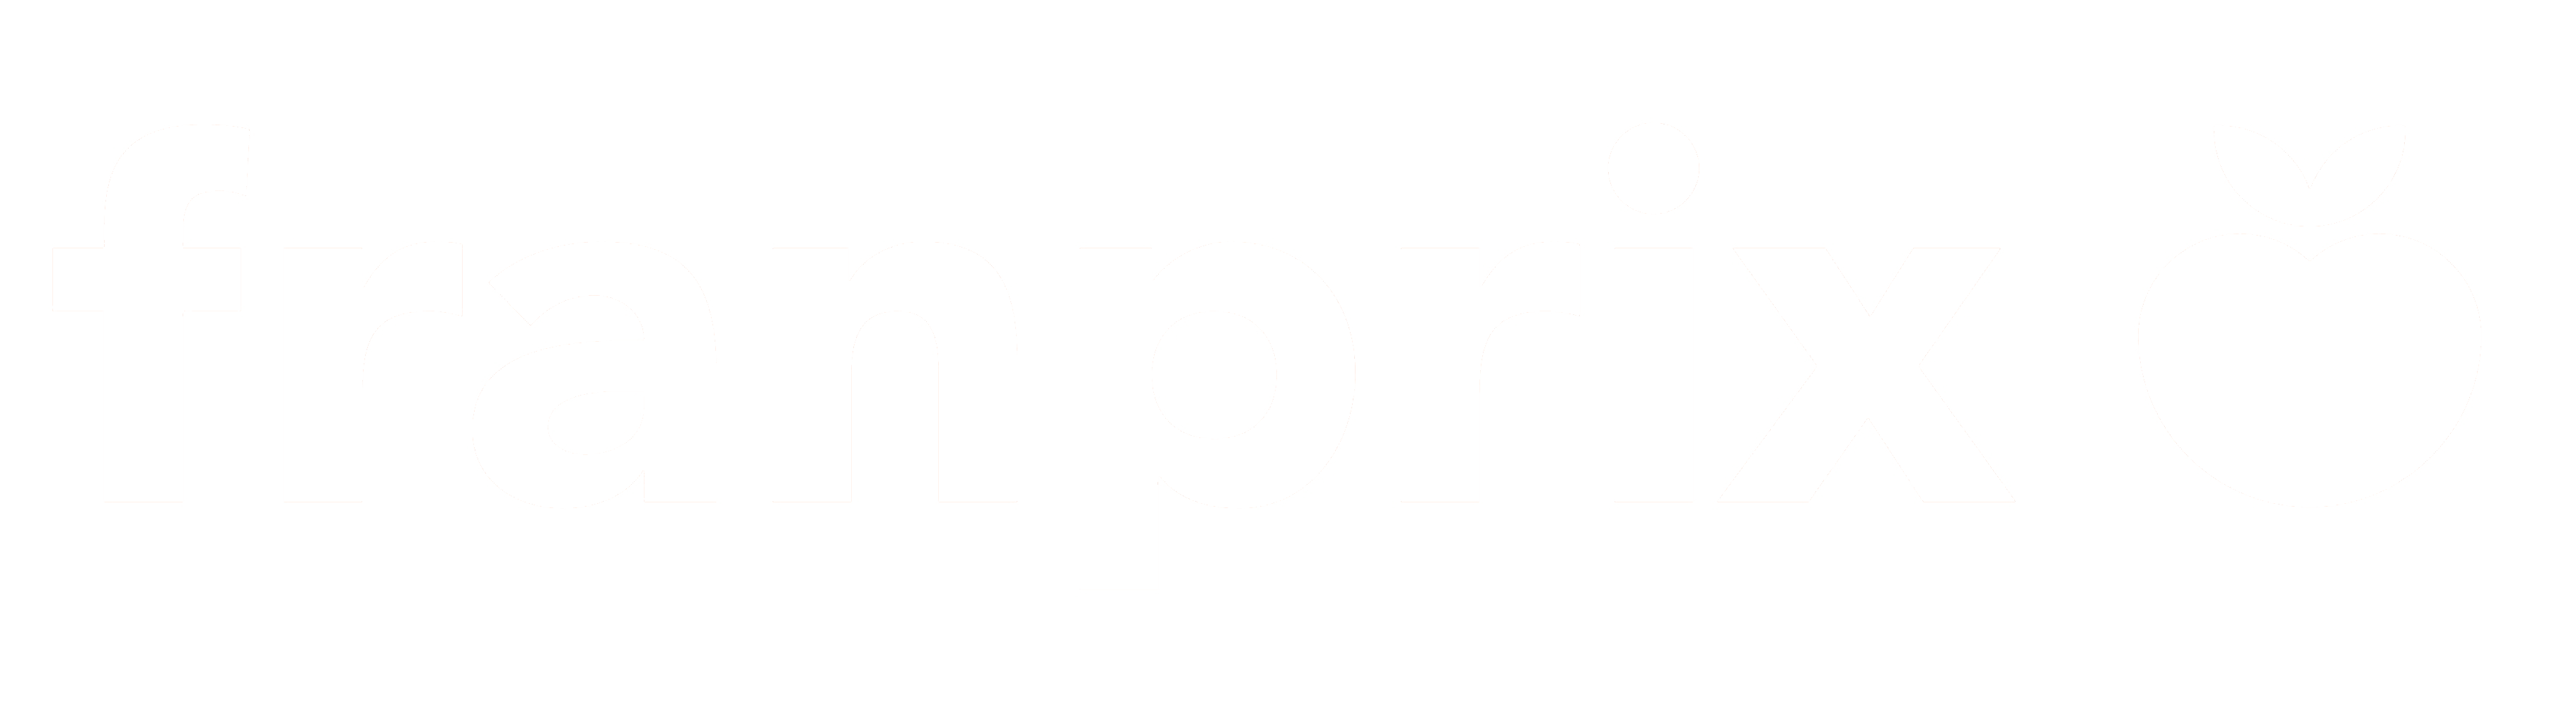 Logo franprix enseigne